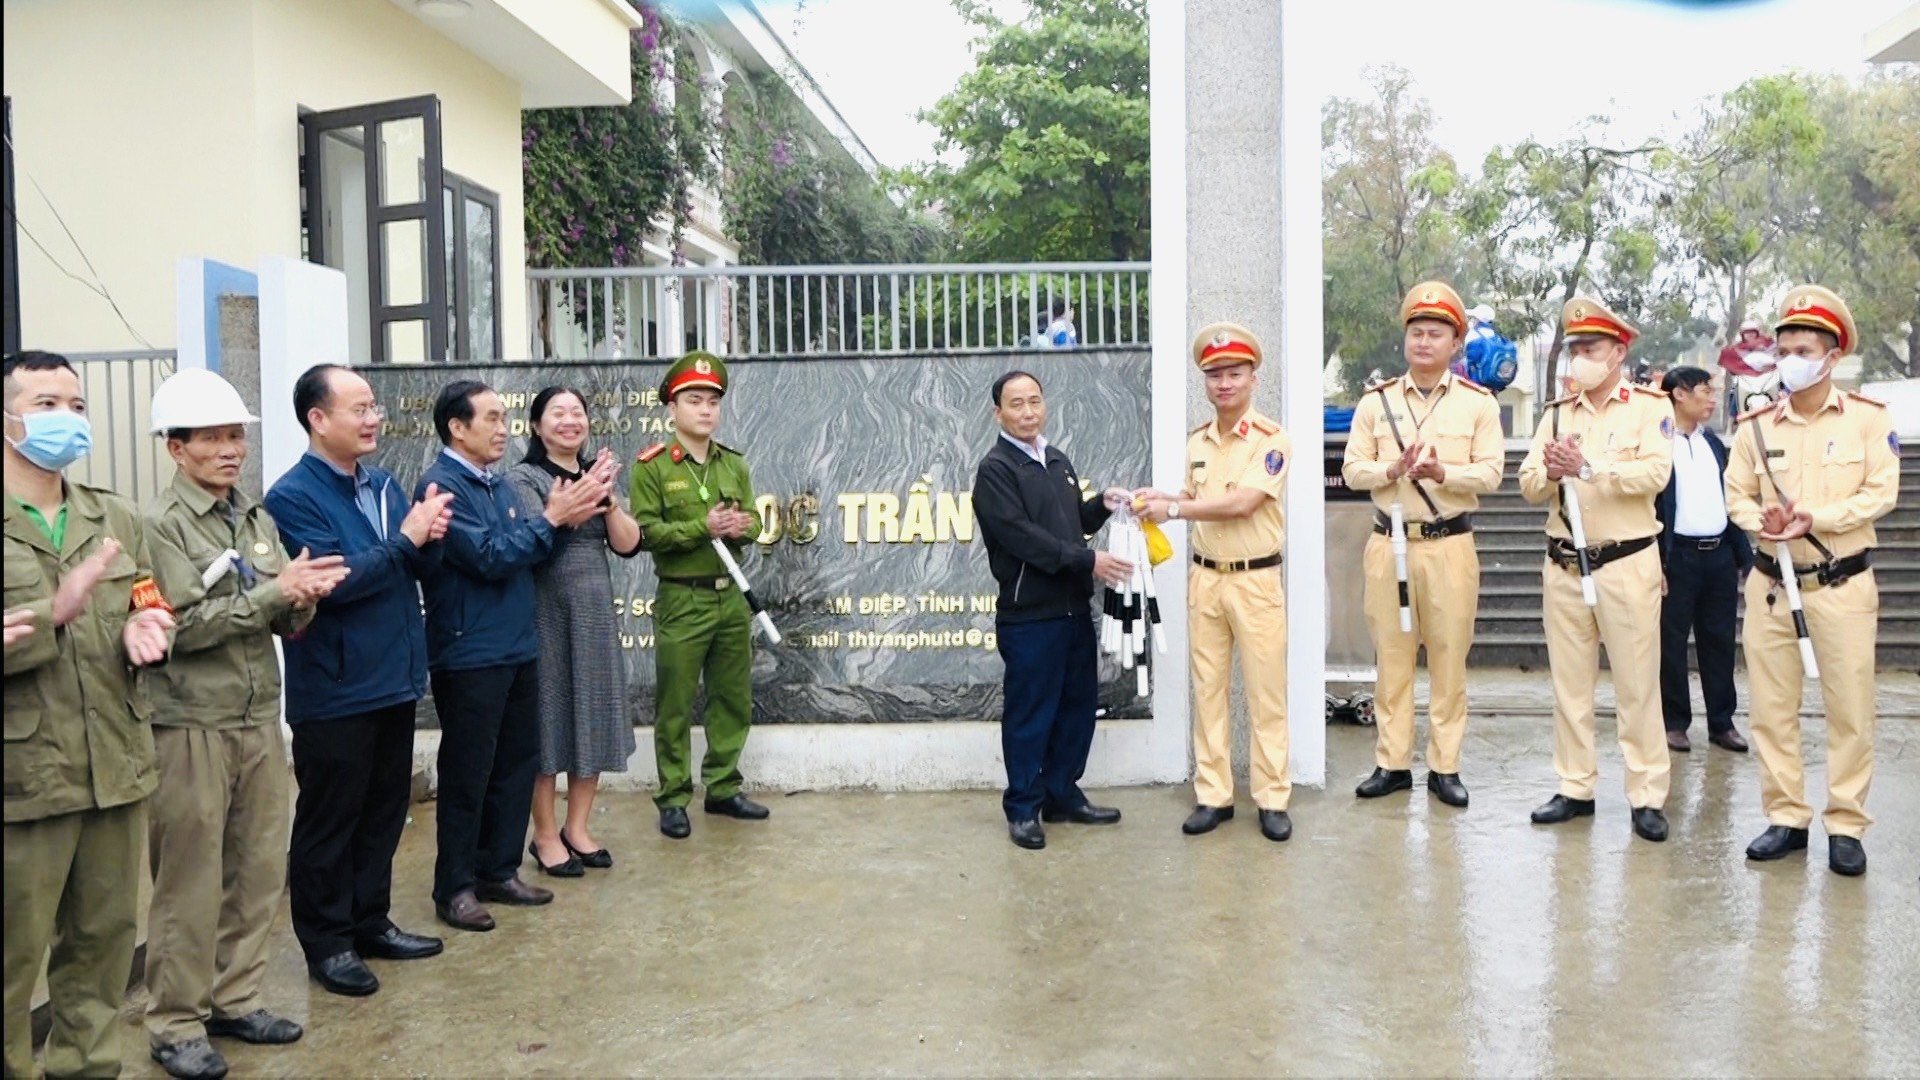 Hiệu quả bước đầu mô hình “CCB tham gia giữ gìn trật tự An toàn giao thông tại cổng trường Tiểu học Trần Phú”        